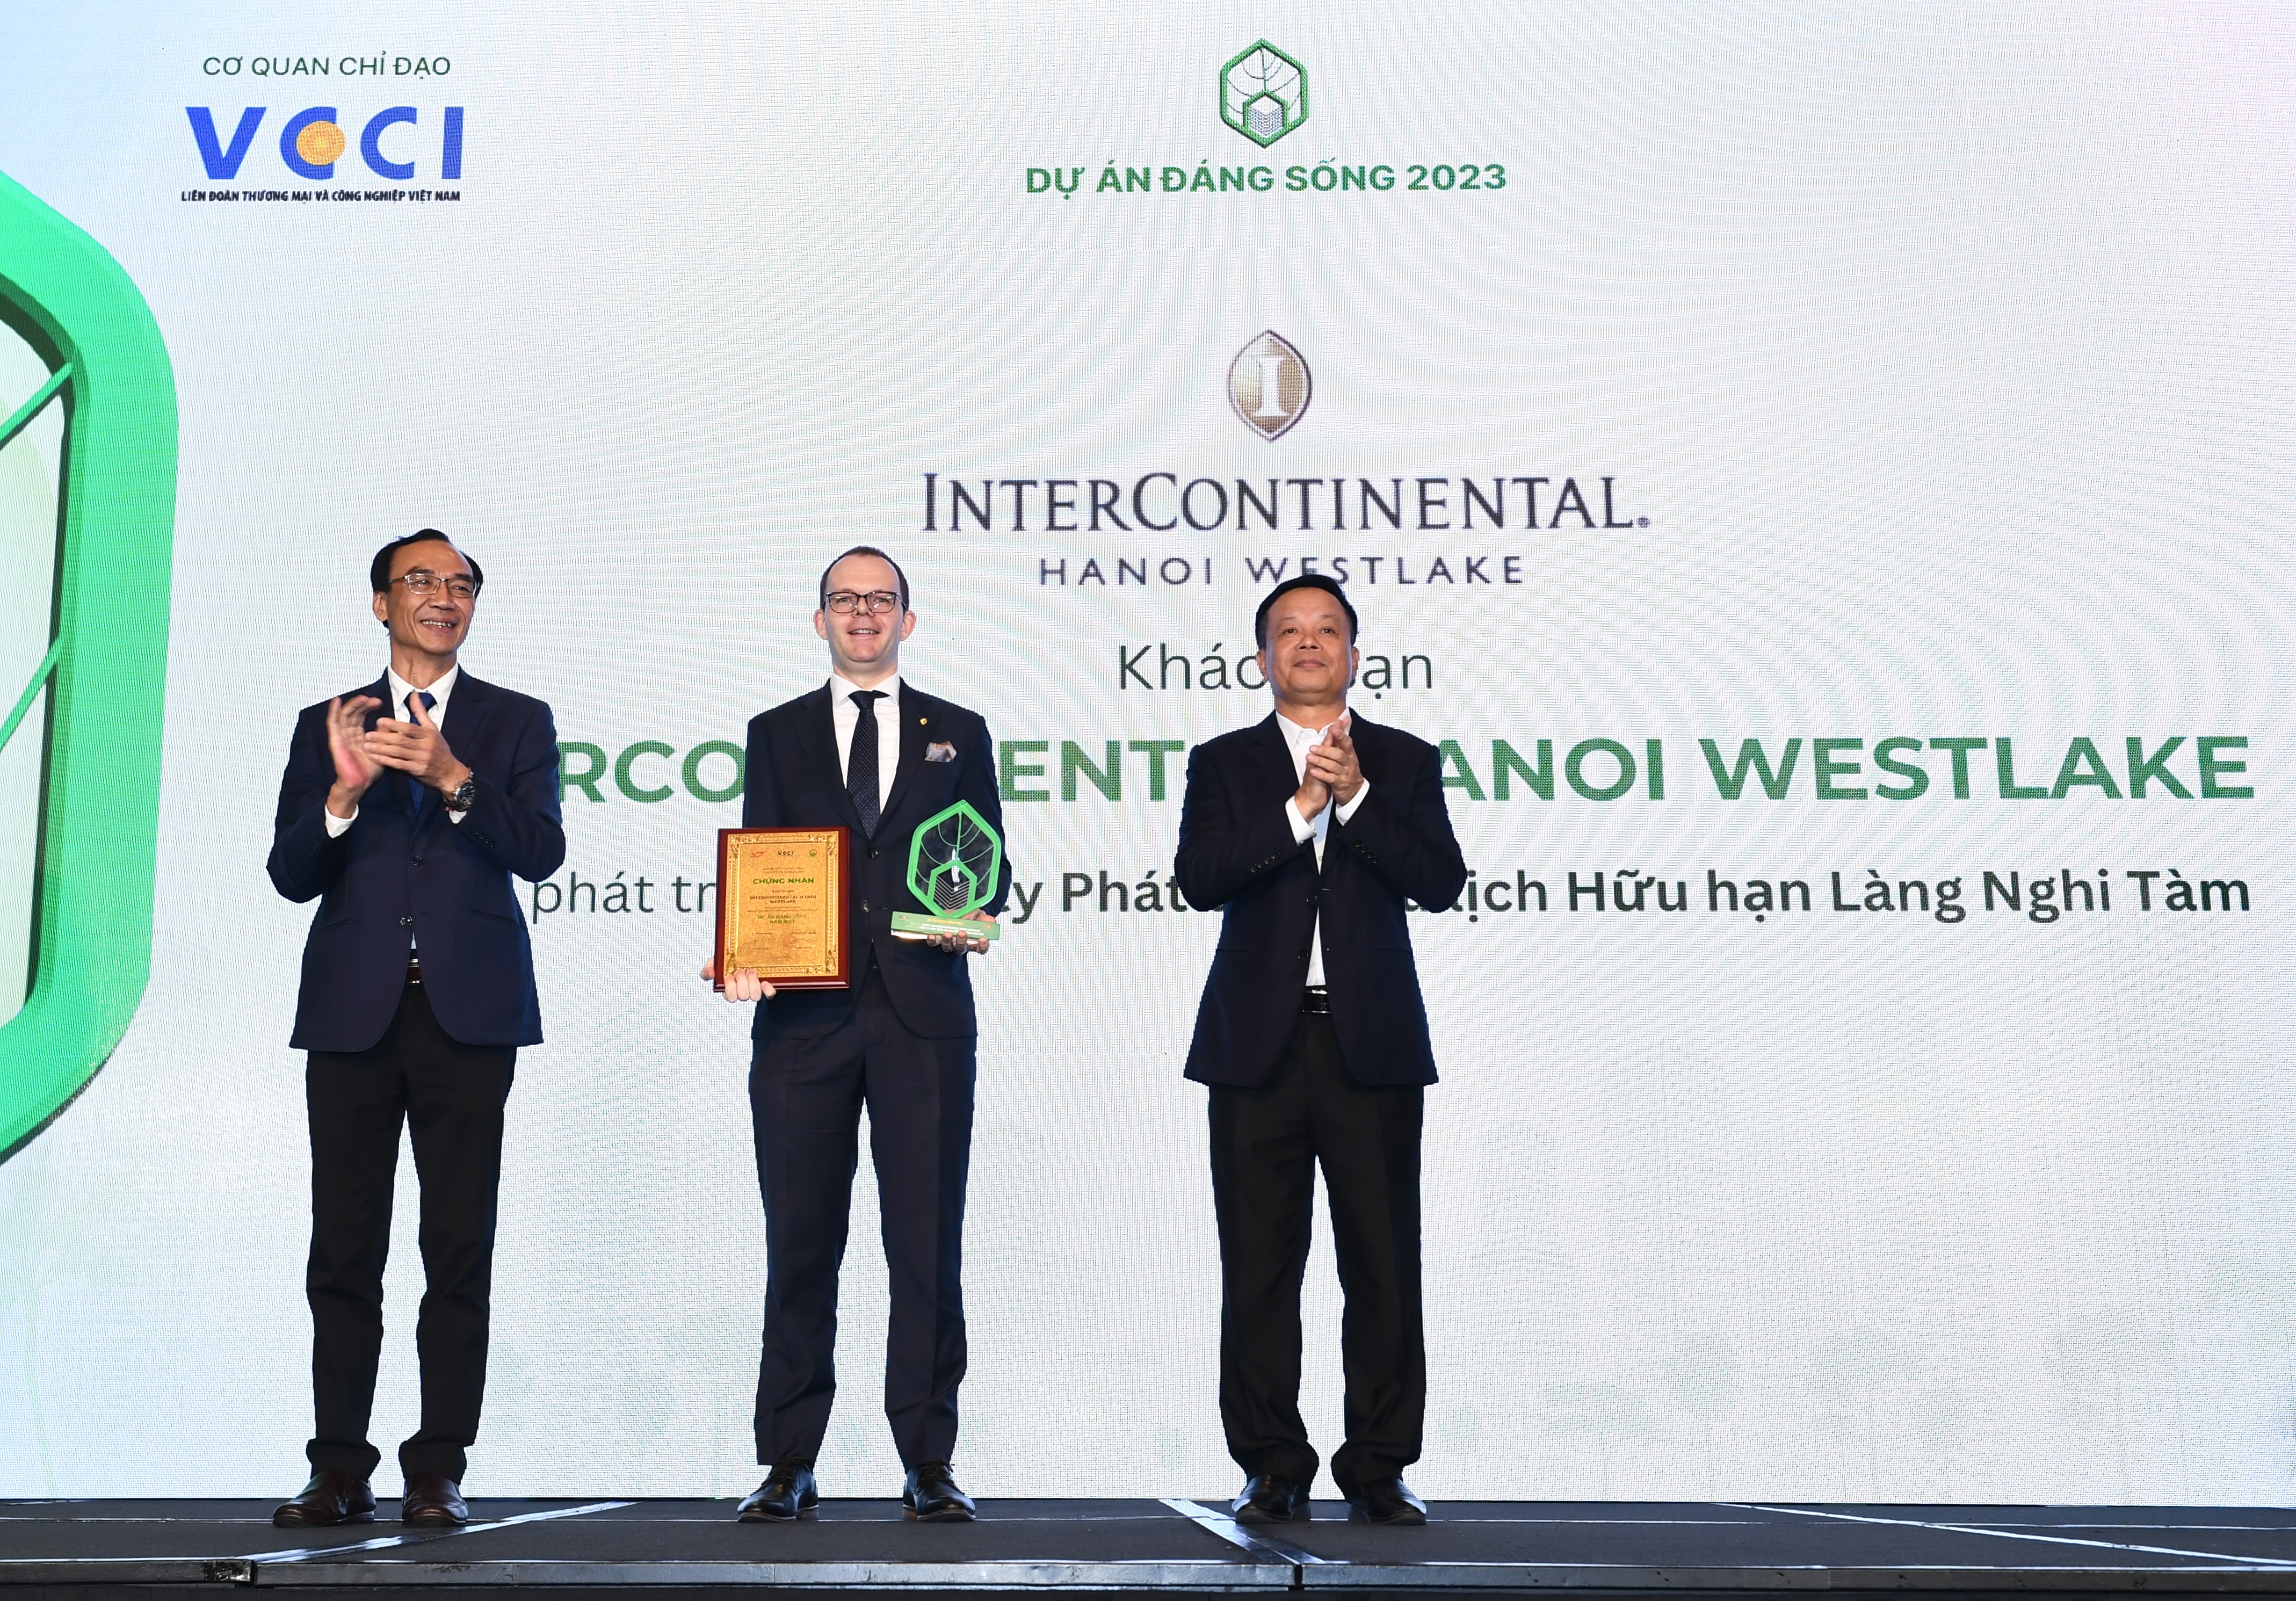 Đại diện Tập đoàn BRG nhận giải thưởng “Dự án Đáng trải nghiệm năm 2023” cho Khách sạn InterContinental Hanoi Westlake.